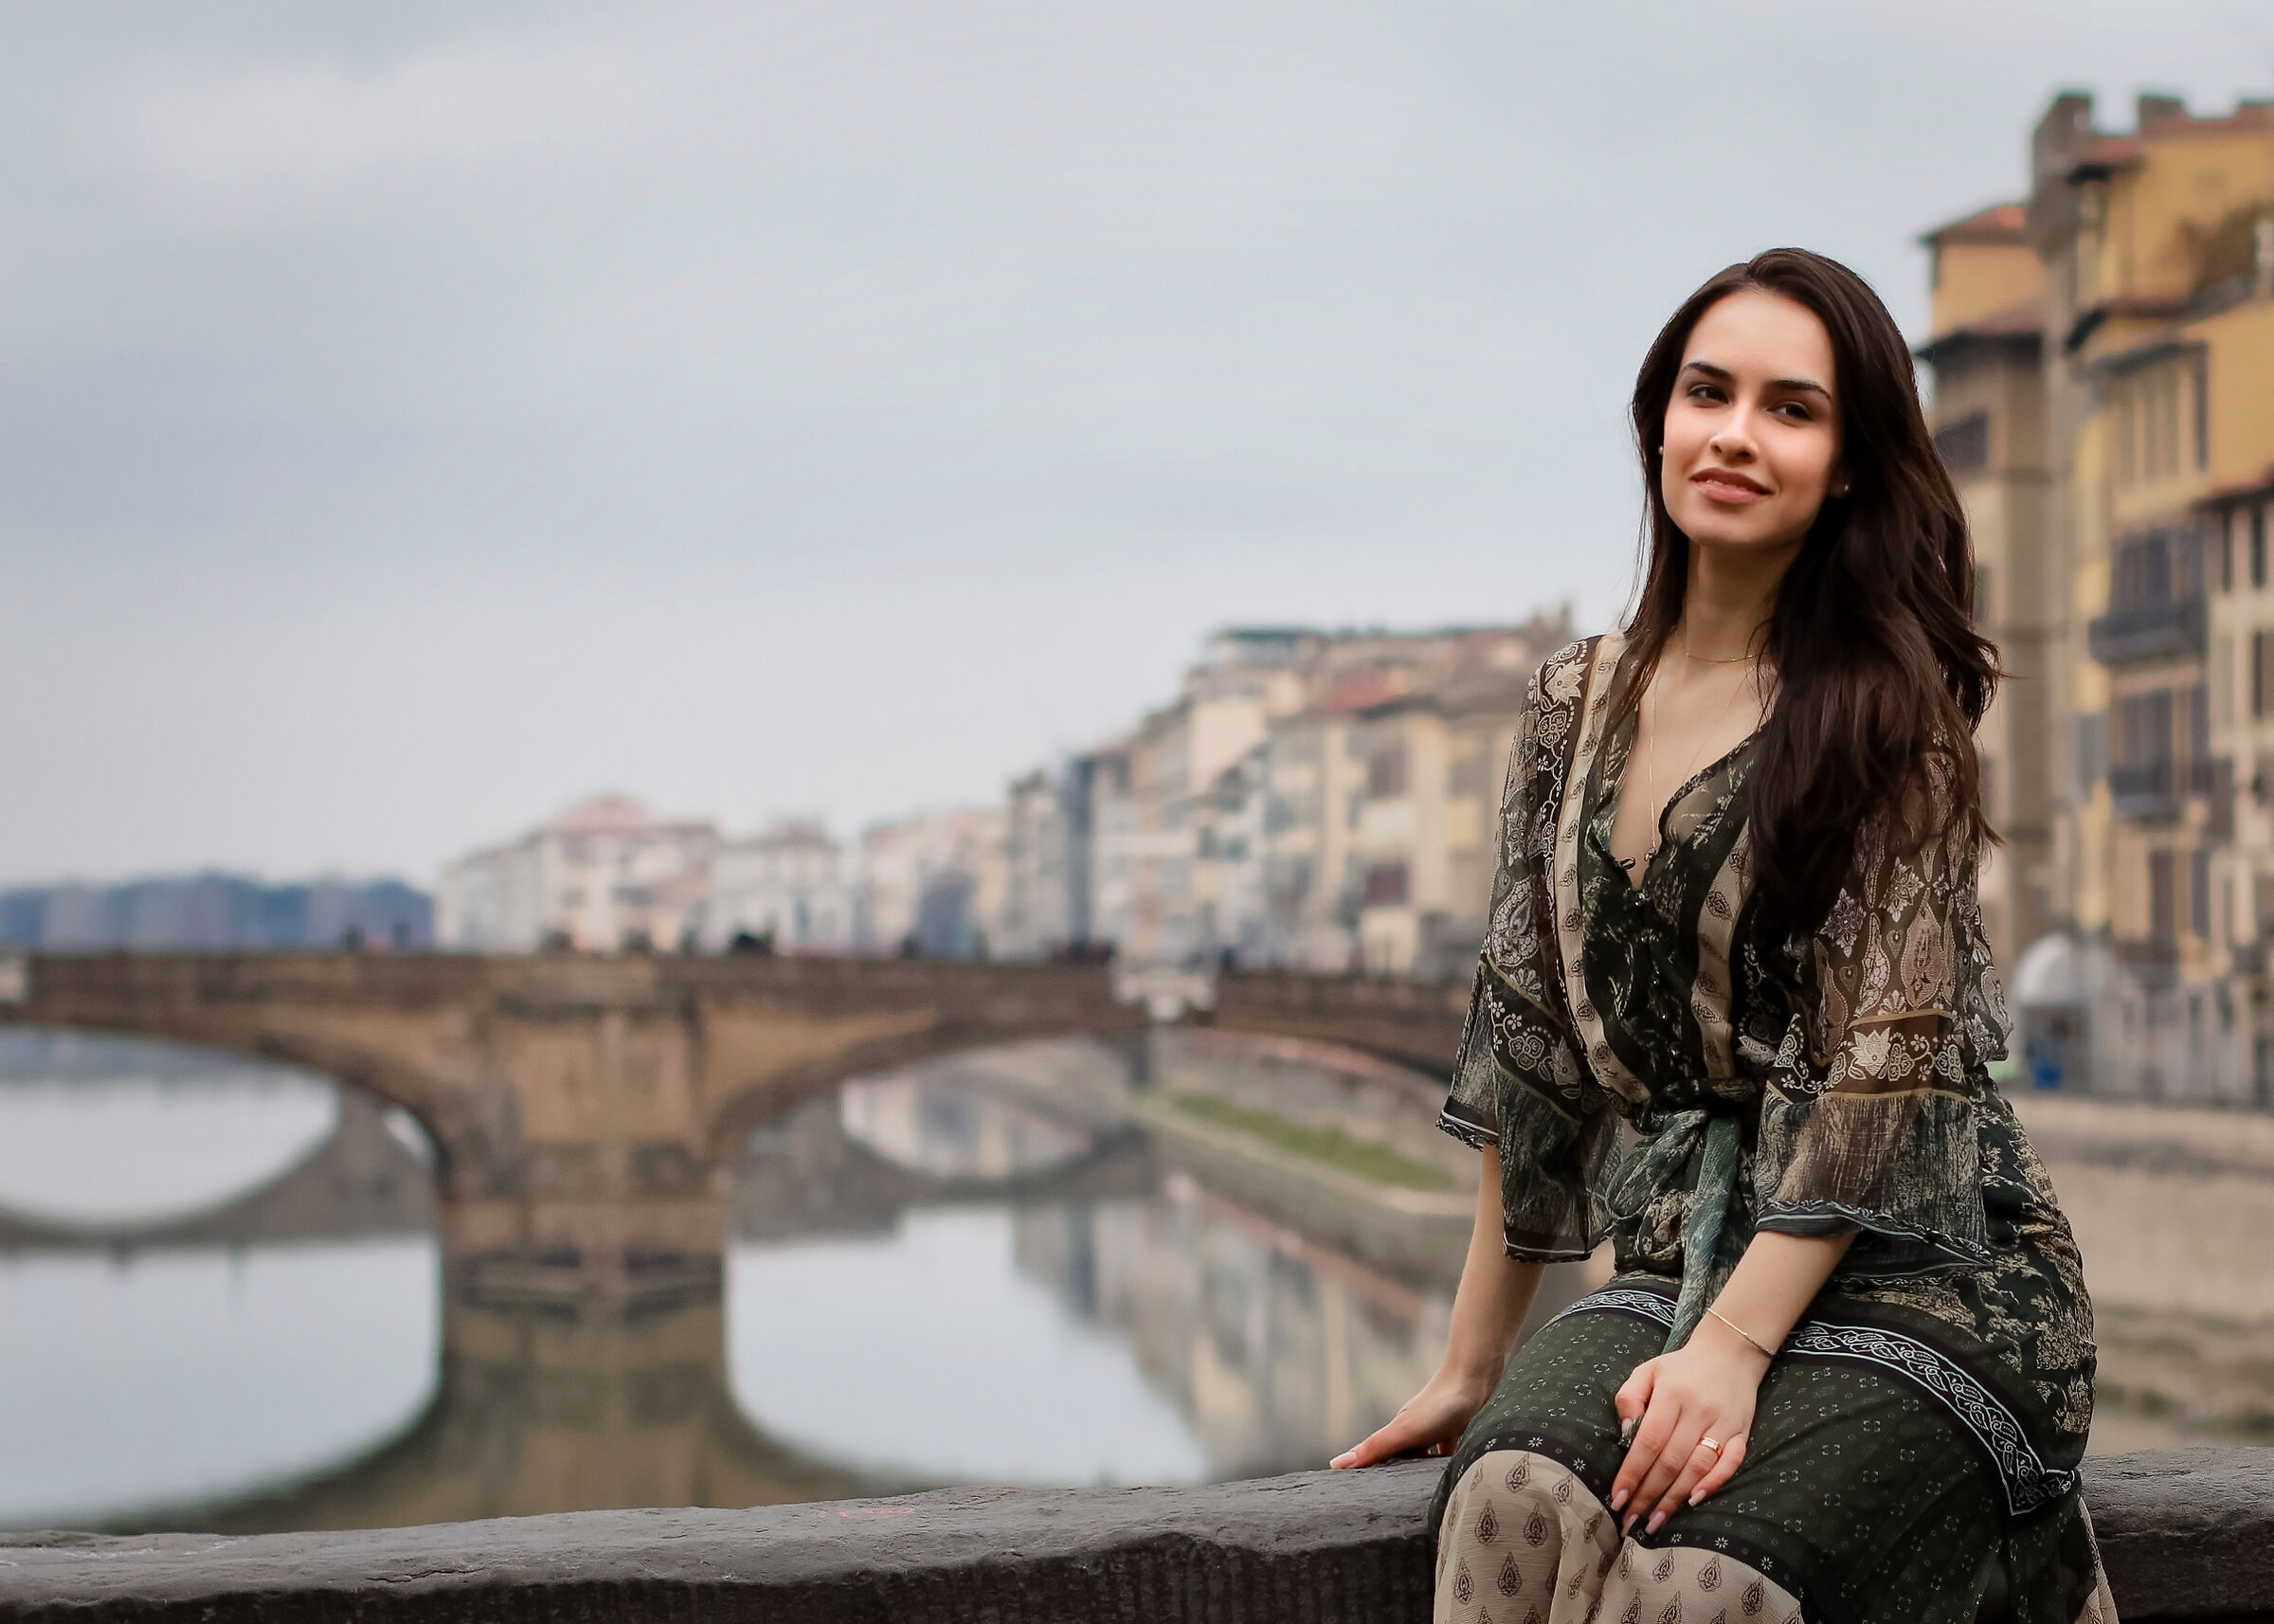 La ragazza di Ponte Vecchio...